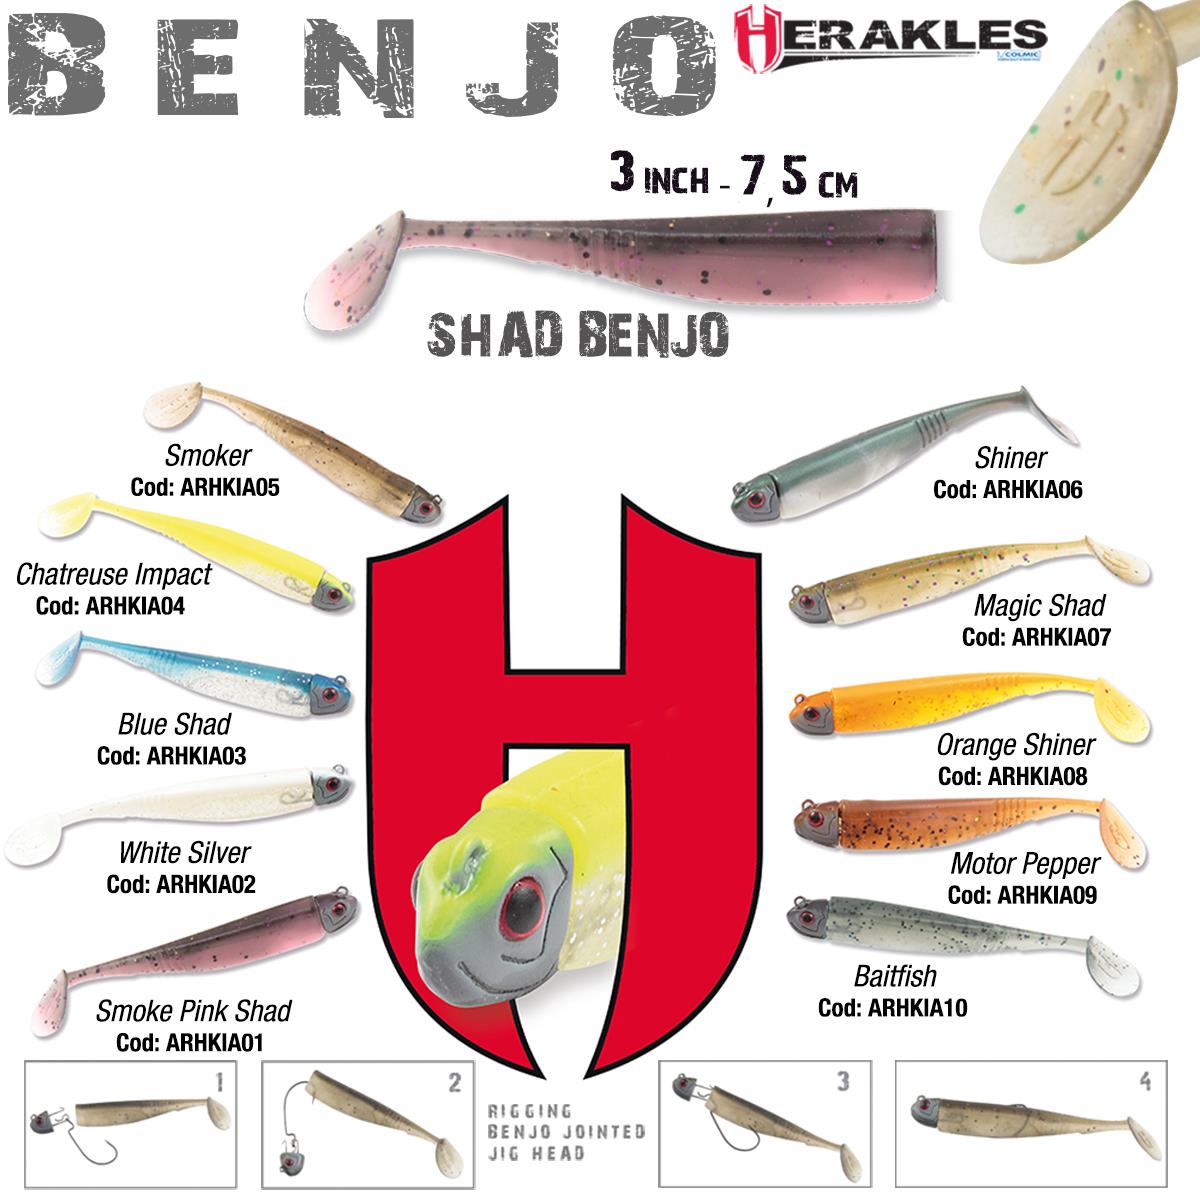 SHAD BENJO 3 7.5cm BAITFISH